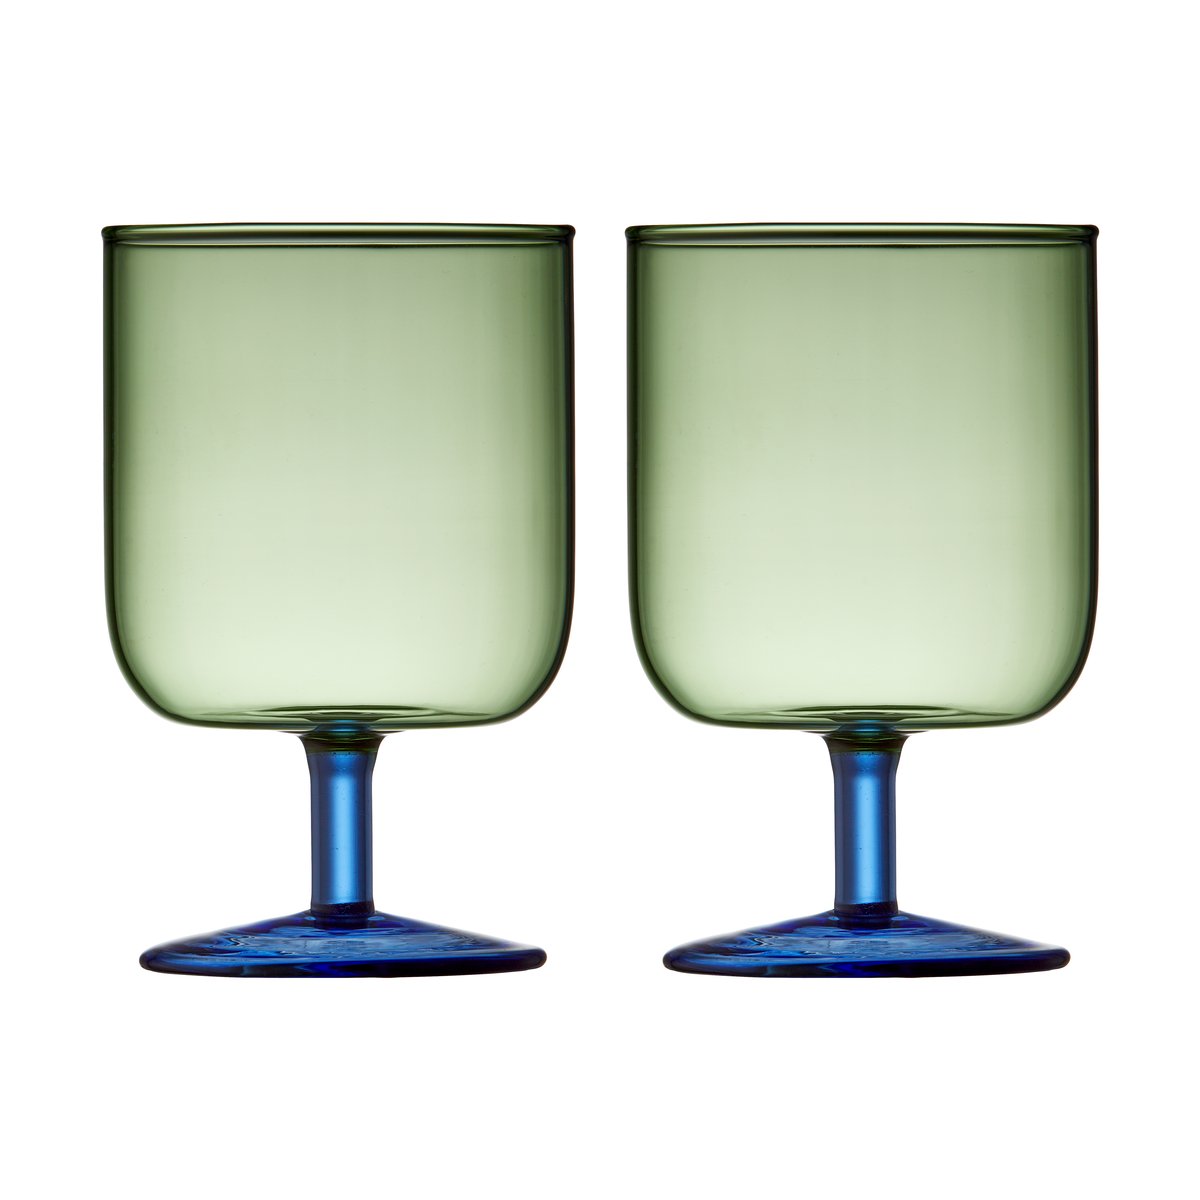 Lyngby Glas Torino viinilasi 30 cl 2-pakkaus Green-blue